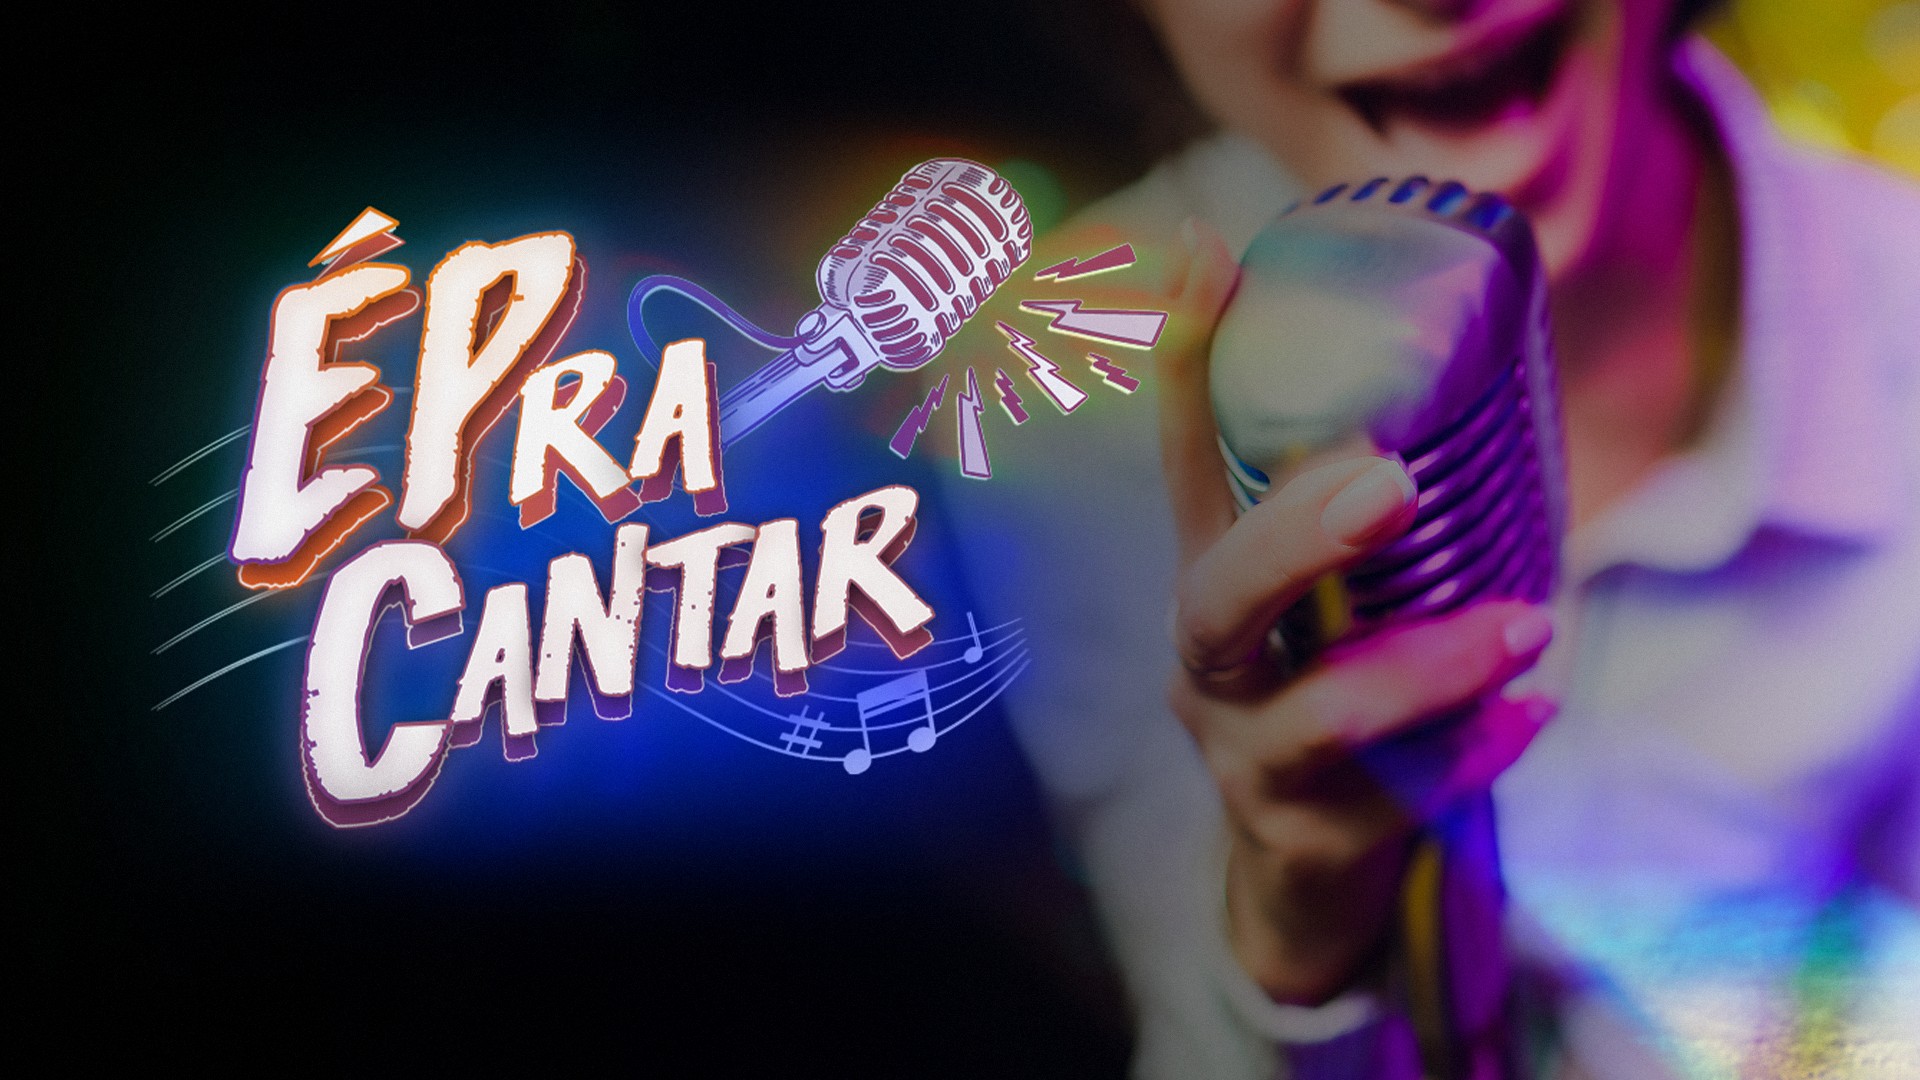 'ÉPra Cantar': concurso musical da EPTV encerra inscrições nesta sexta; veja quais serão os próximos passos